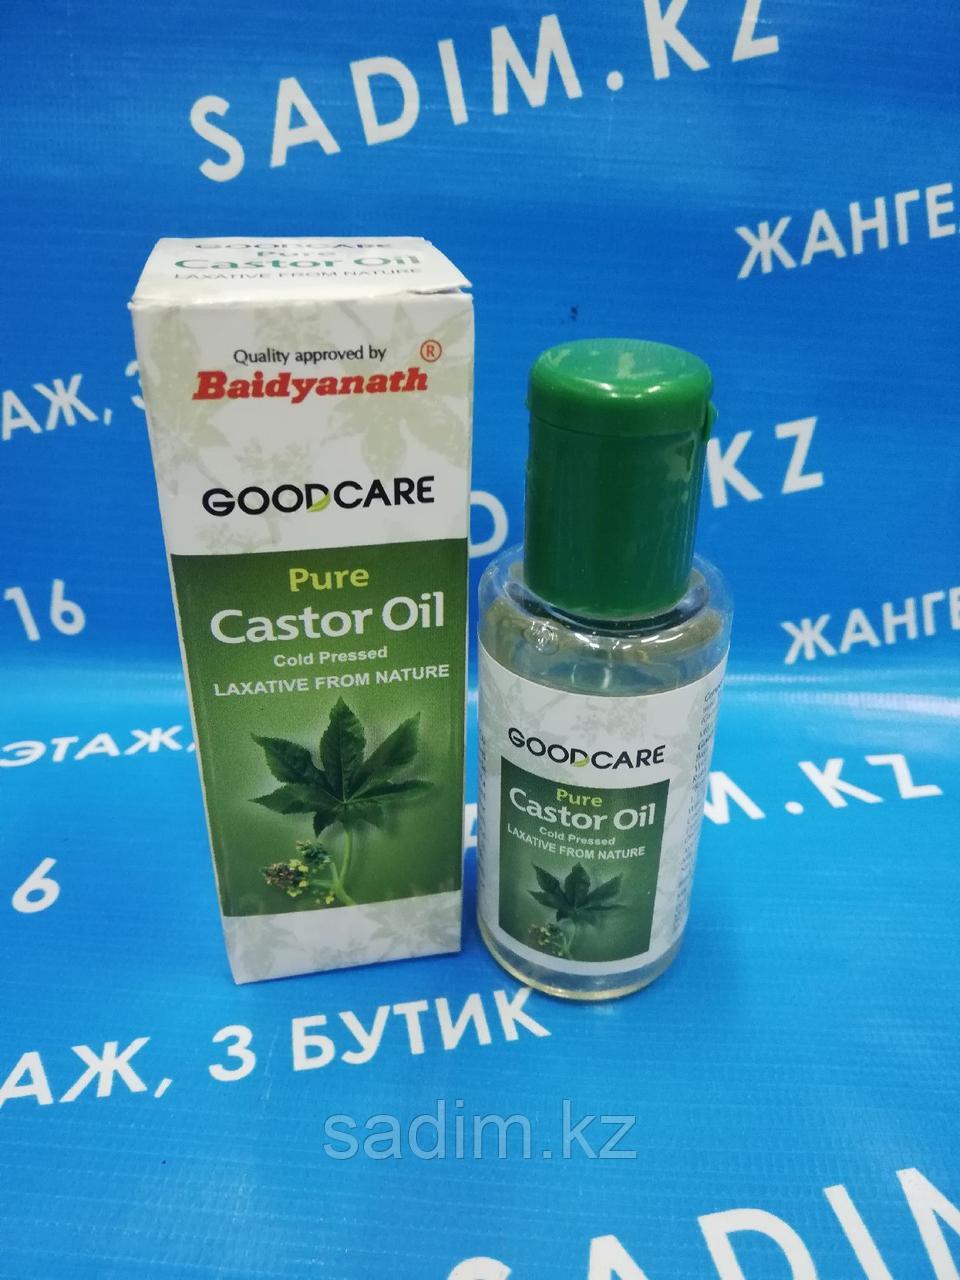 Касторовое масло Castor Oil, Goodcare Baidyanath - чистое натуральное масло холодного отжима, 50 мл